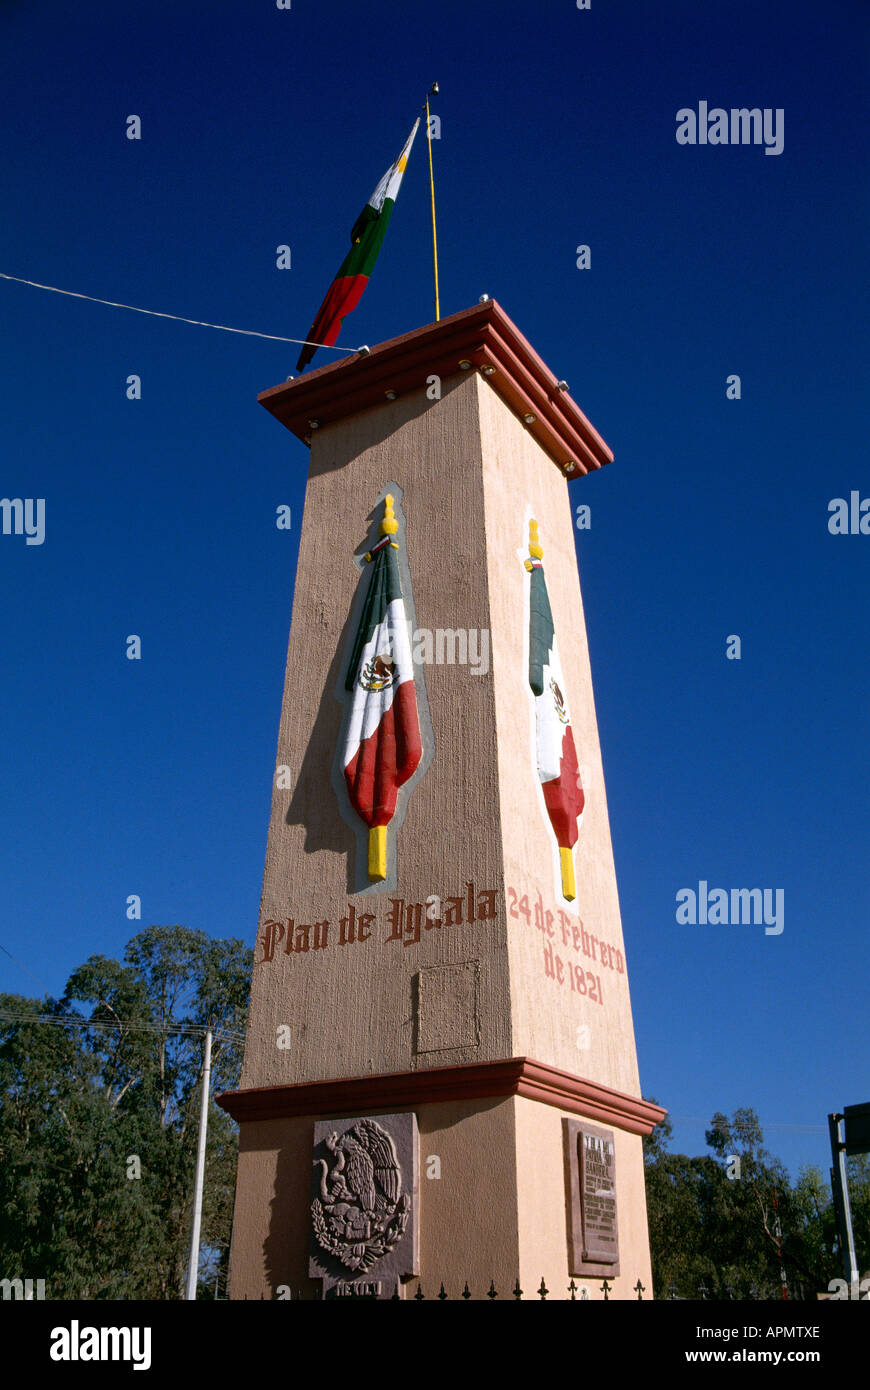 Détail d'un monument commémorant l'endroit où le drapeau national a été conçu se trouve dans Bouagénina un drapeau flotte à partir du haut du monument dont les côtés inscrit avec l'écriture des répliques de l'indicateur d'affichage Banque D'Images